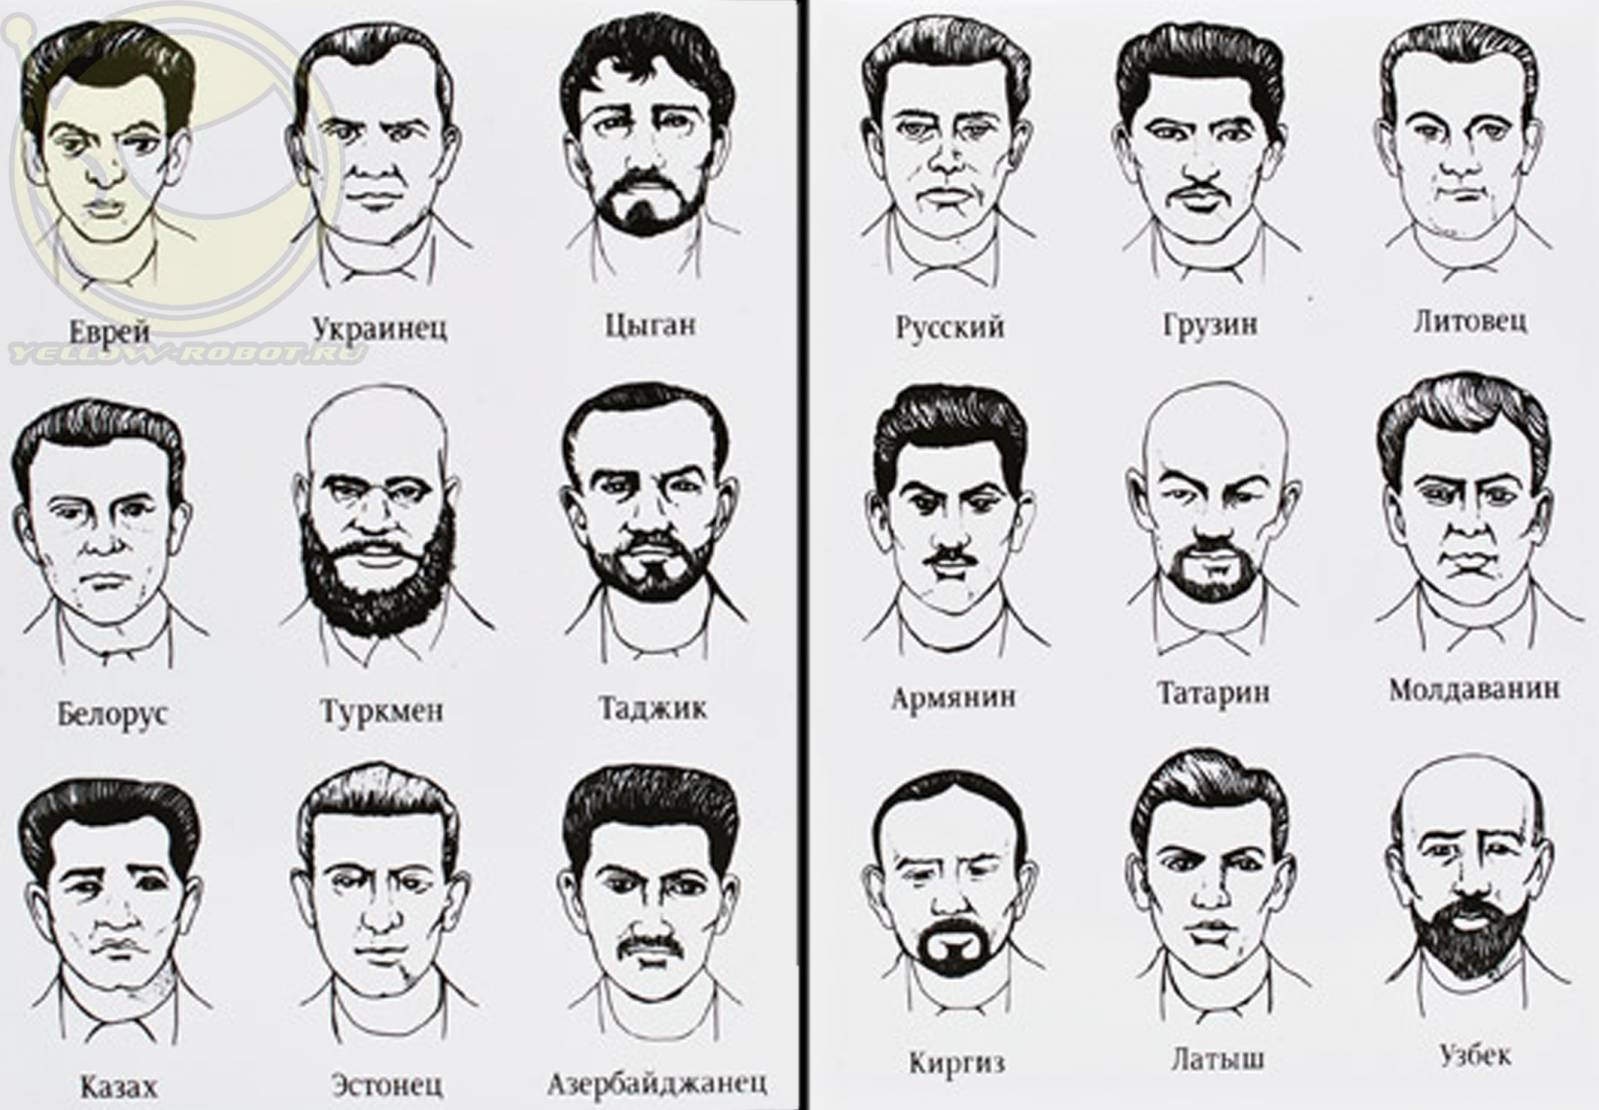 Как отличить узбека от таджика и киргиза. Белорусы внешность. Портреты национальностей. Виды национальностей. Лица людей по национальностям.